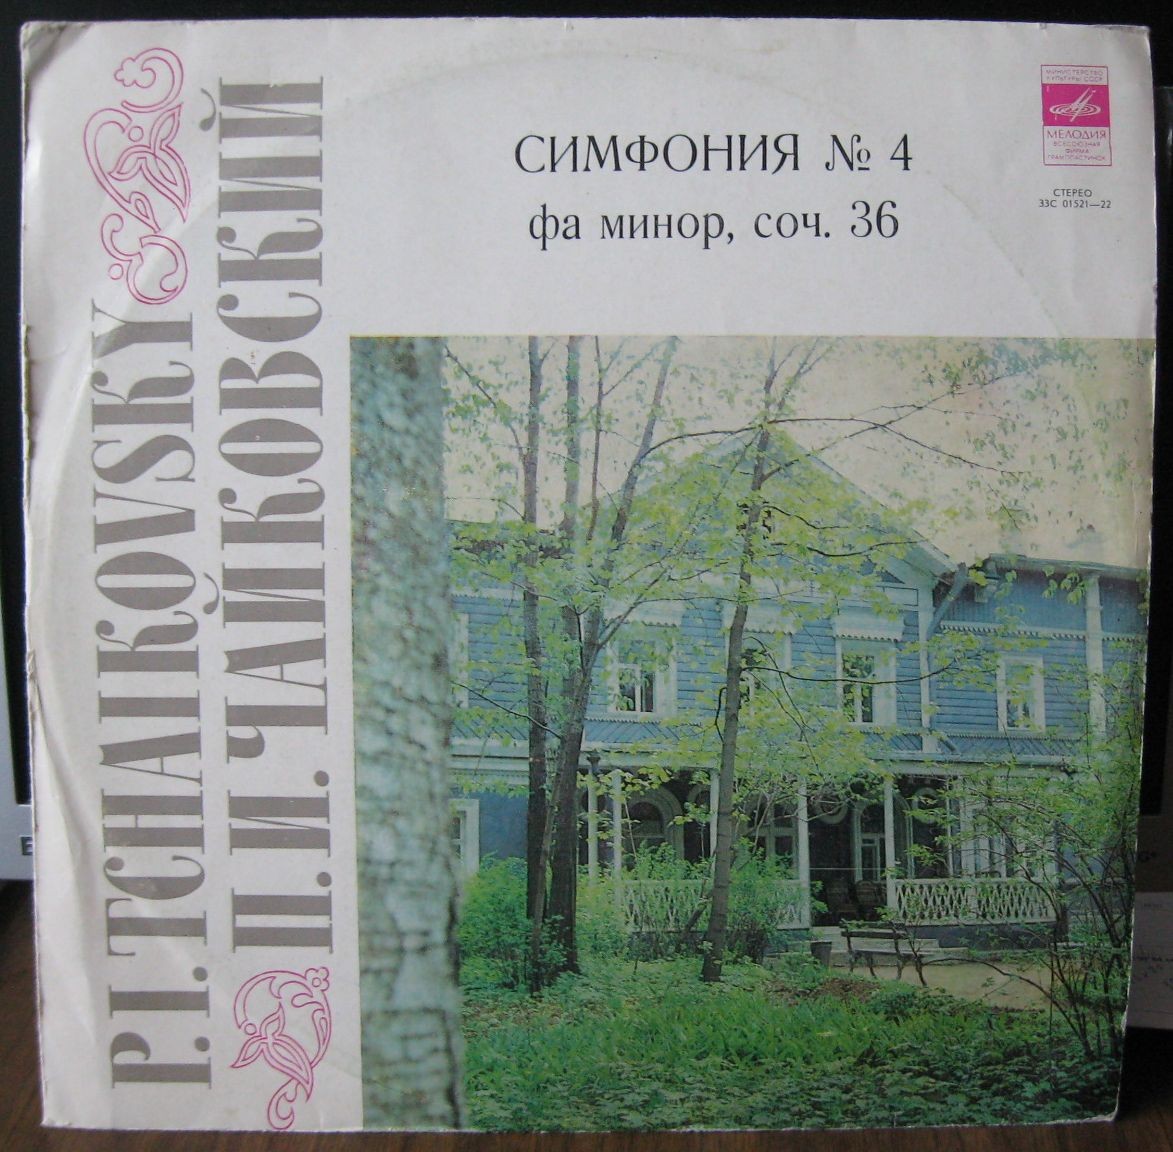 П. Чайковский: Симфония № 4 фа минор, соч. 36 (ГСО СССР, Е. Светланов)